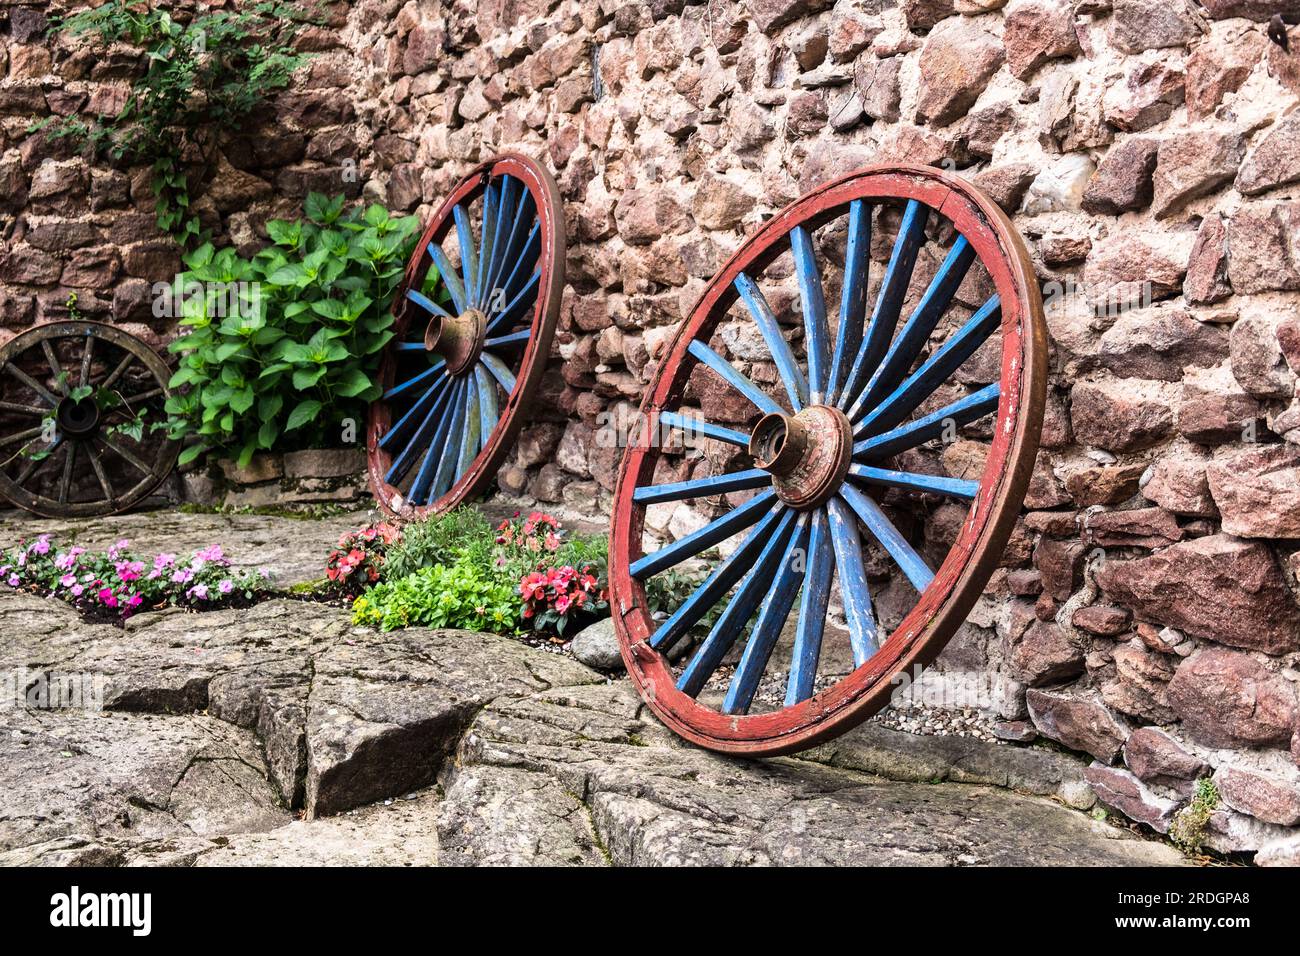 Dekorative Kutschenräder an einer Steinmauer Foto Stock